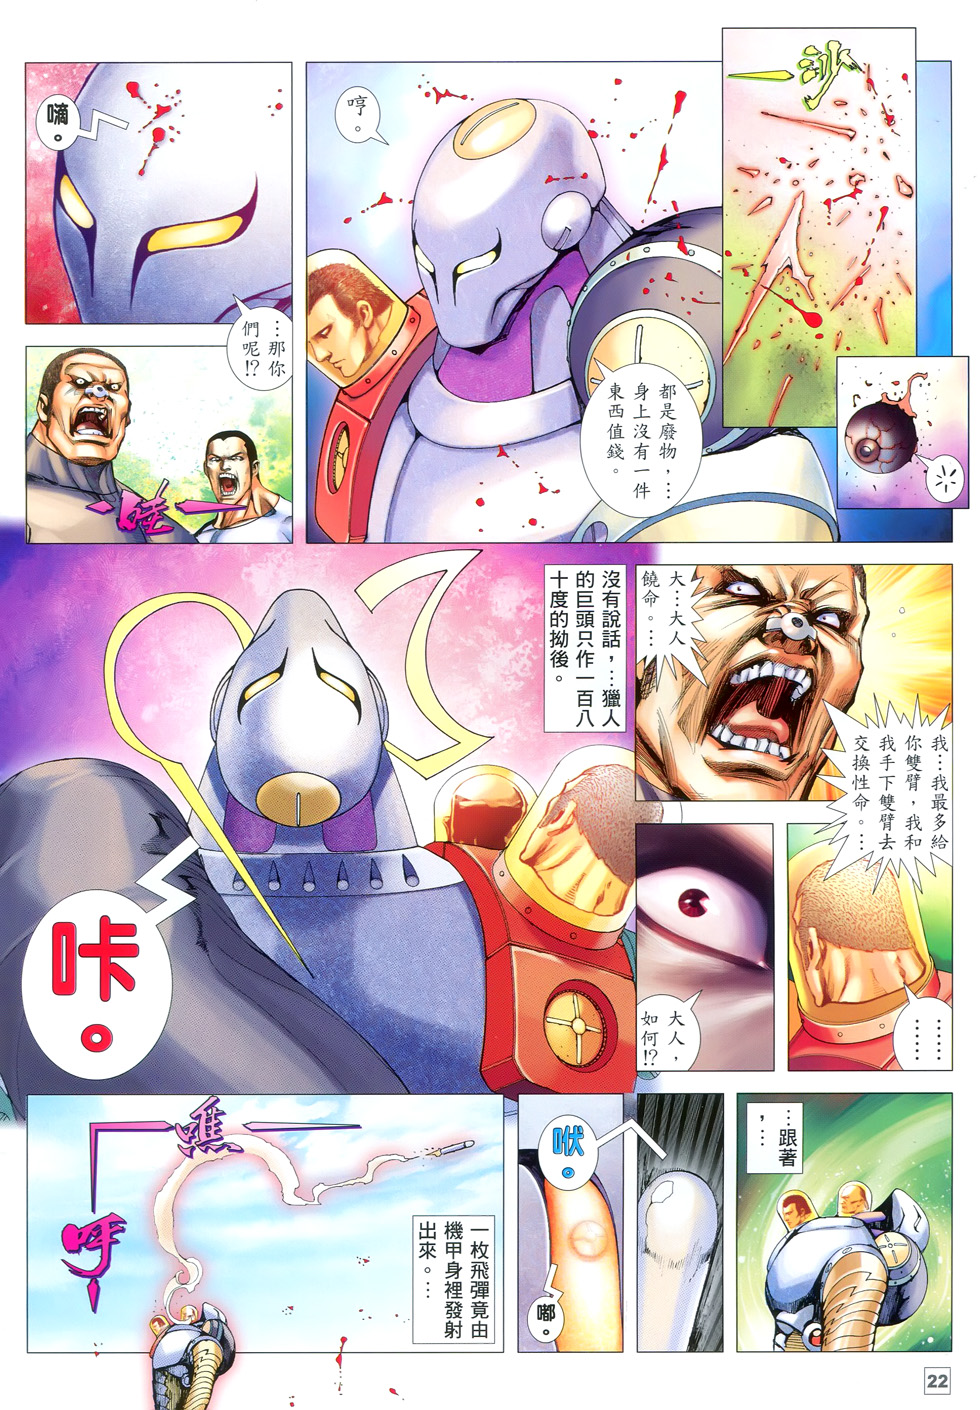 【免费】温日良《武神108（彩色）》JPG 漫画下载百度云网盘下载插图1